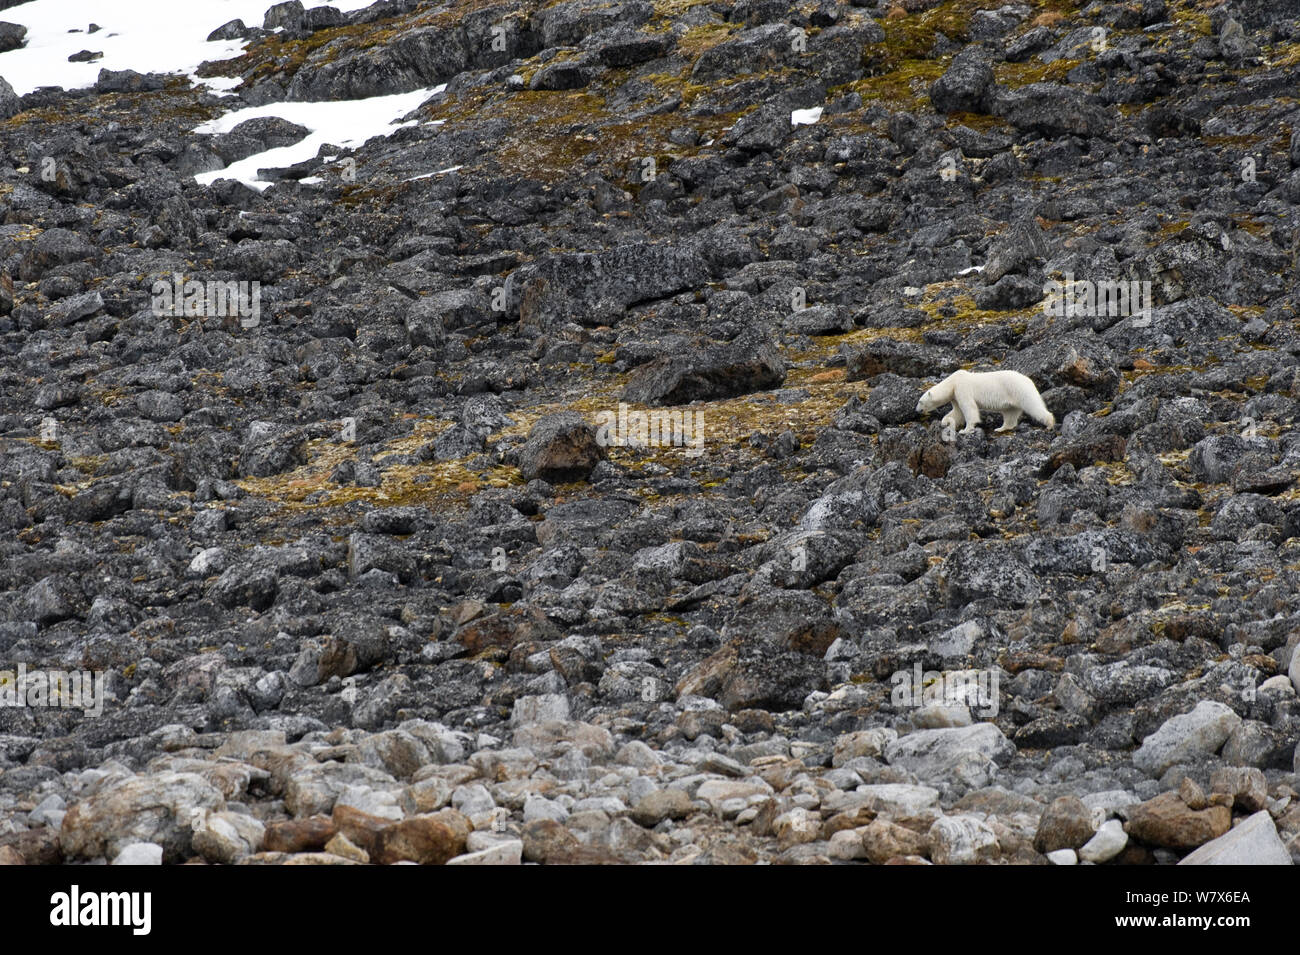 Orso polare (Ursus maritimus) foraggio lungo una costa rocciosa, Svalbard, Norvegia. Luglio 2011. Foto Stock